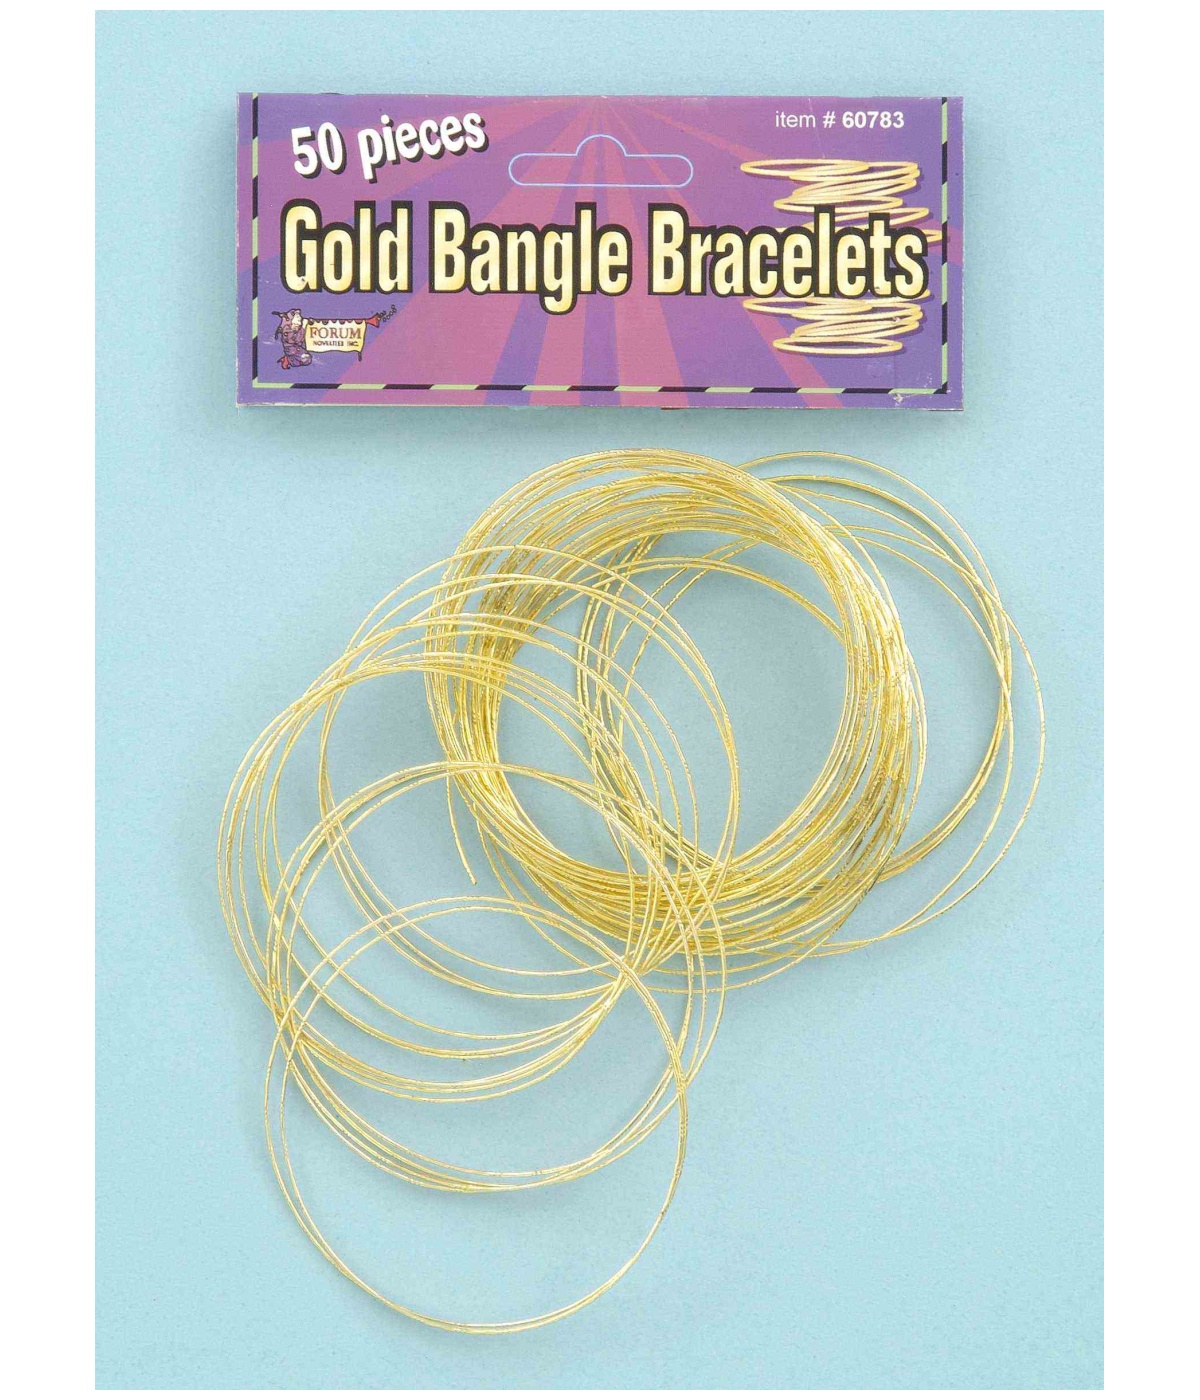  Golden Bangle Bracelets Pack